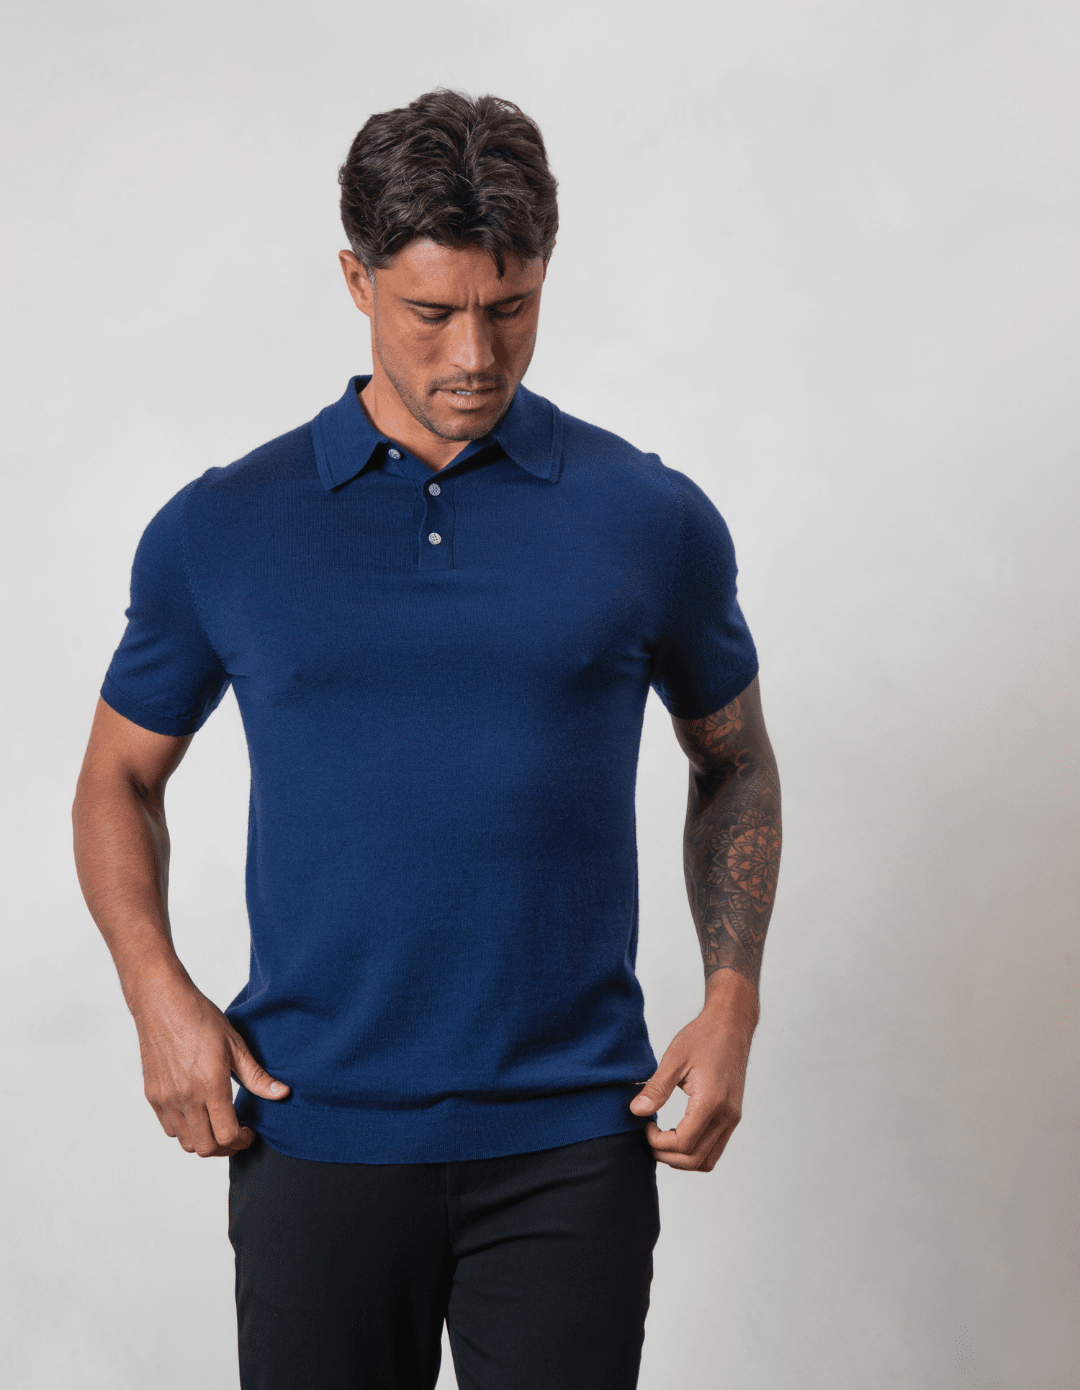 Men's Button Merino Polo | Navy Merino Wool Polo for Men | Express Shipping available – BELIER